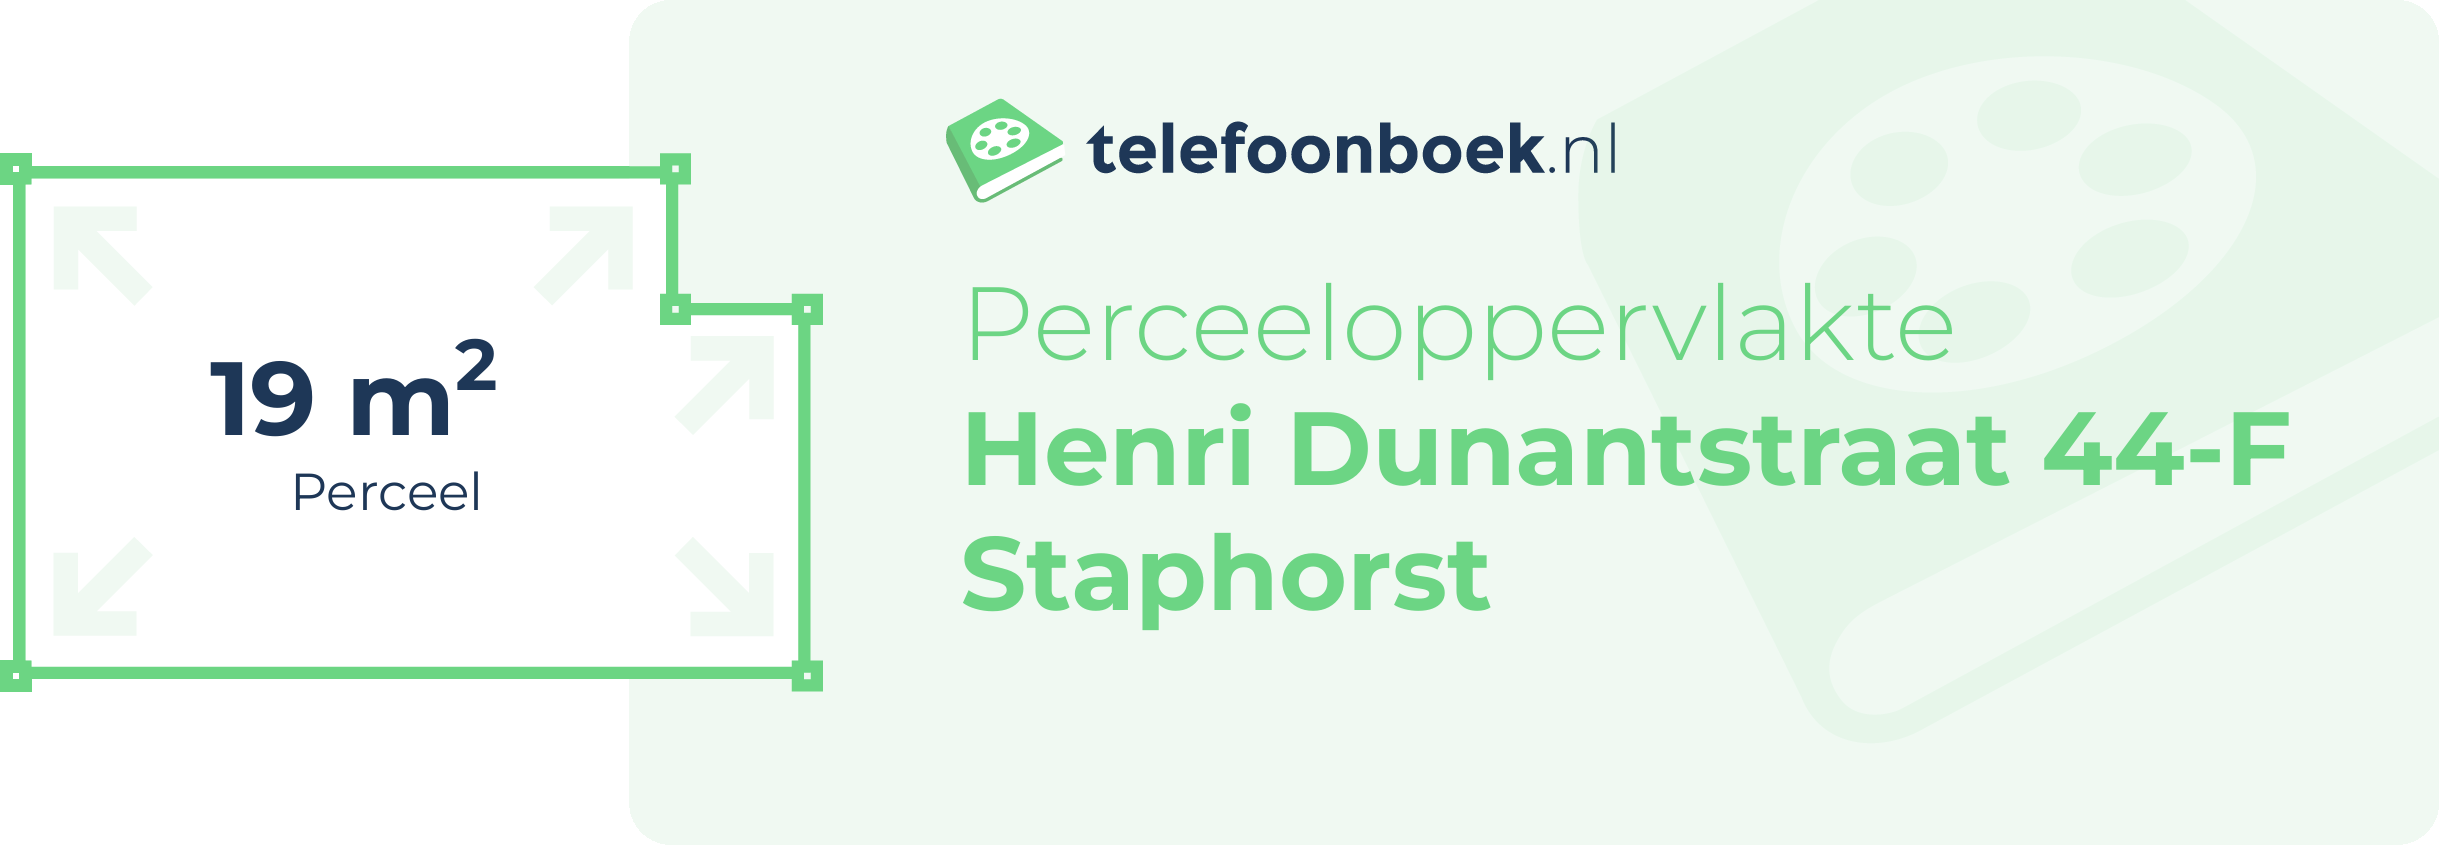 Perceeloppervlakte Henri Dunantstraat 44-F Staphorst